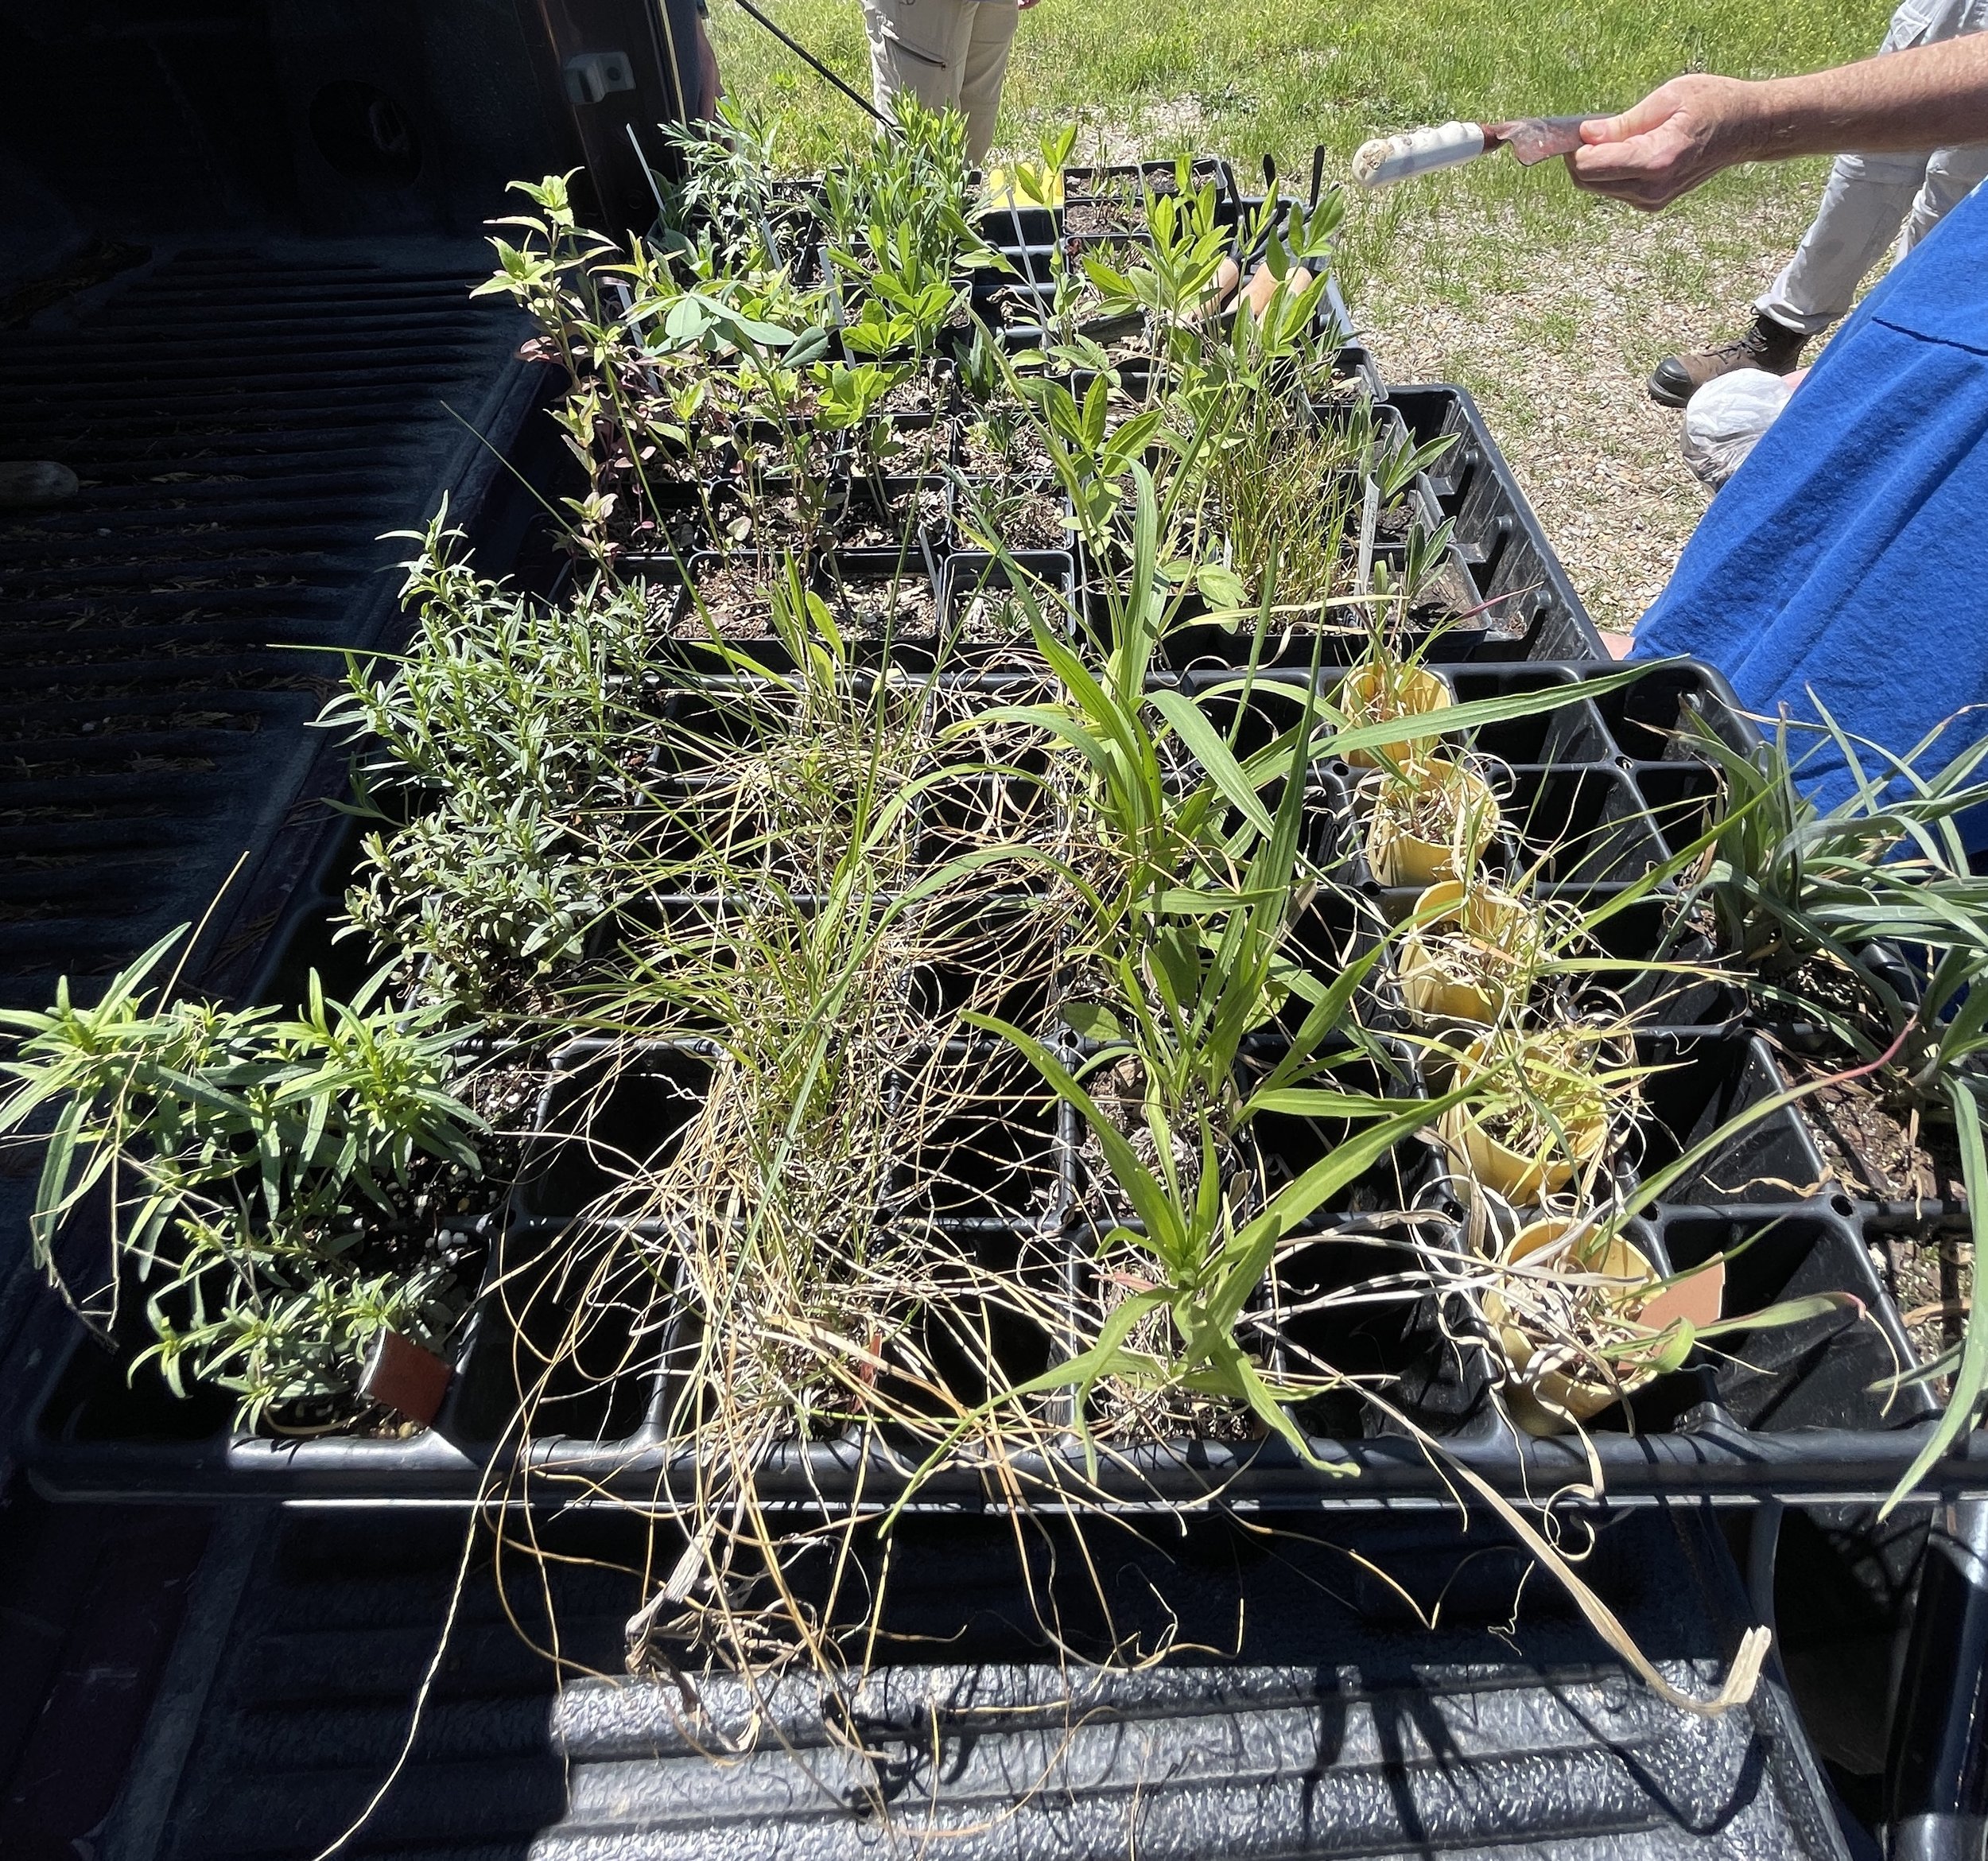 plants in truck bed.JPG